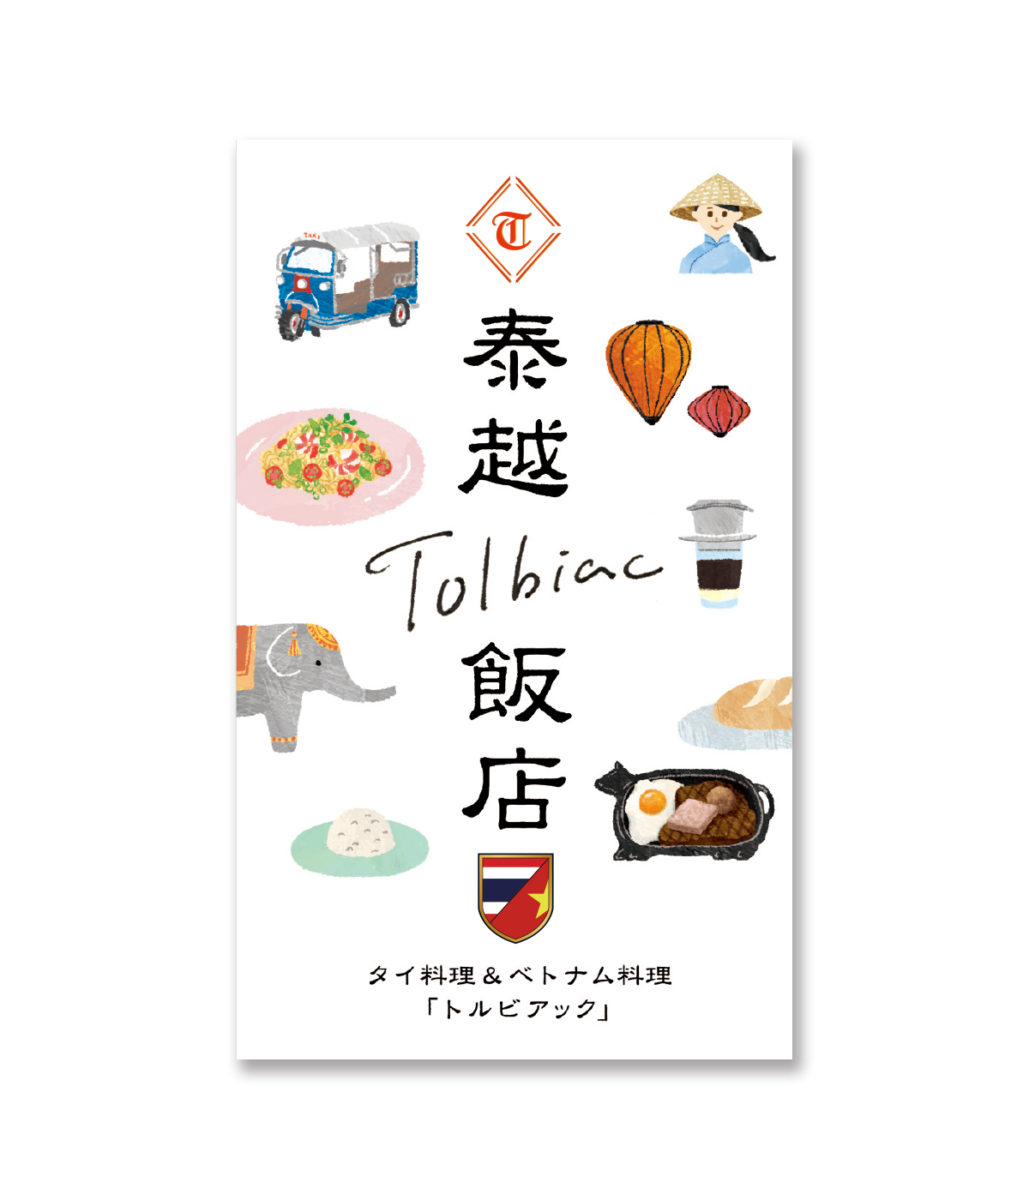 タイ料理店 Tolbiac のショップカード イラスト Fukuoka Mariko イラストレーター 福岡麻利子